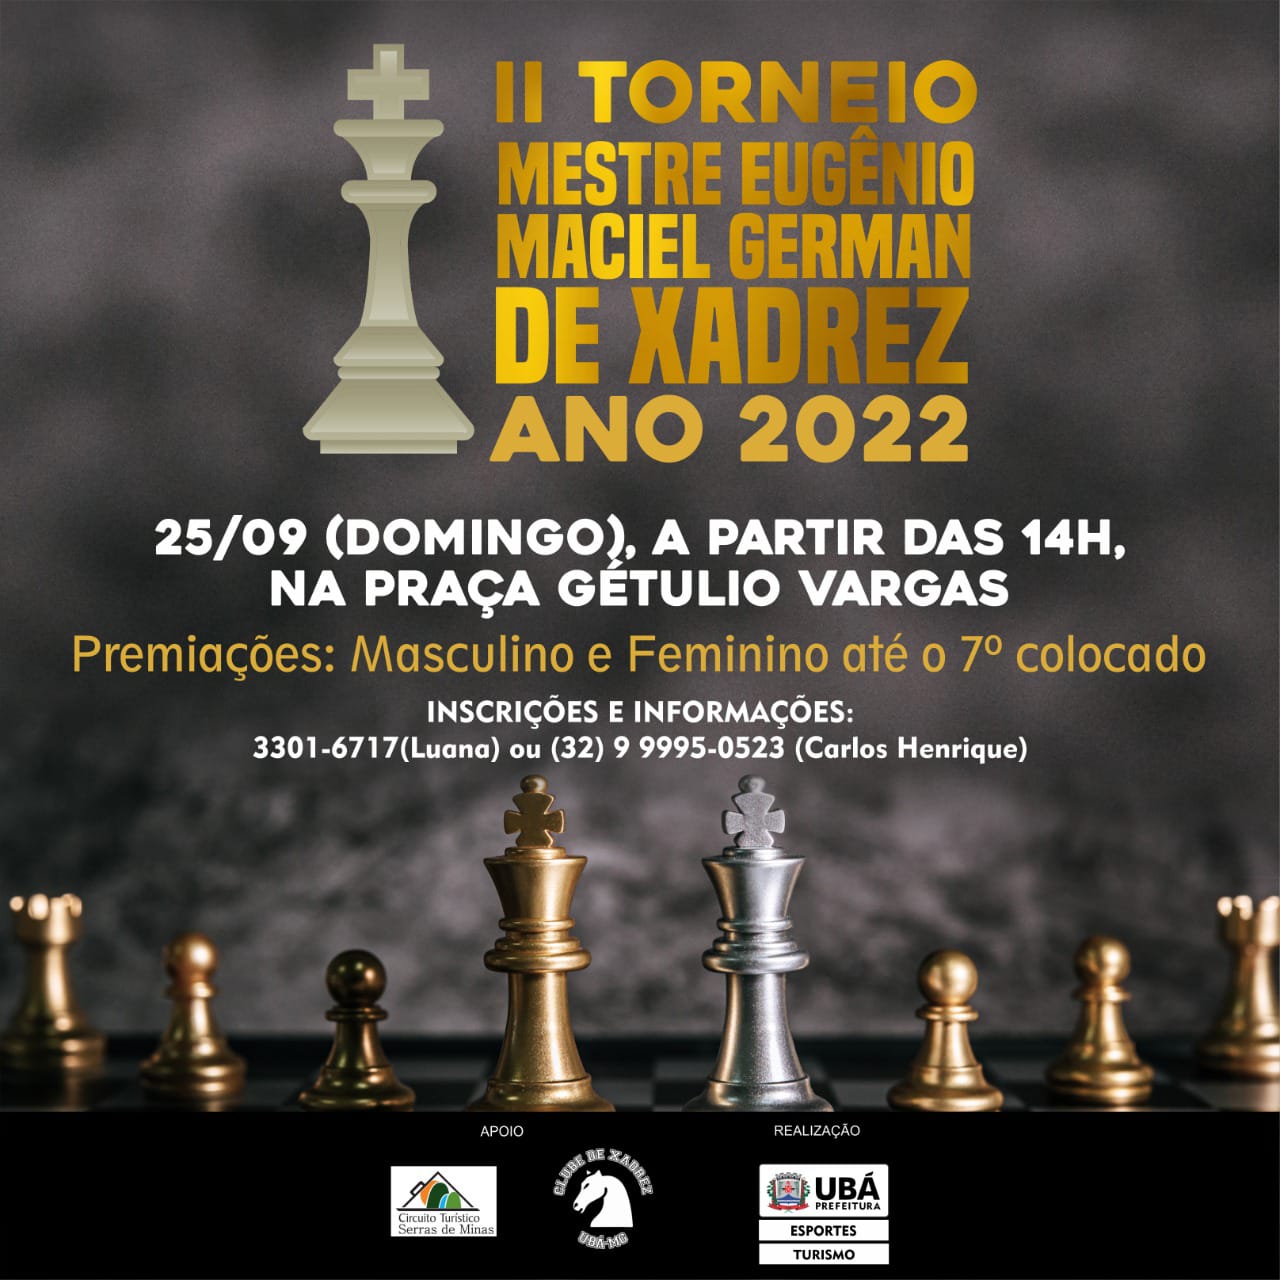 II Torneio Mestre Eugênio Maciel German de Xadrez